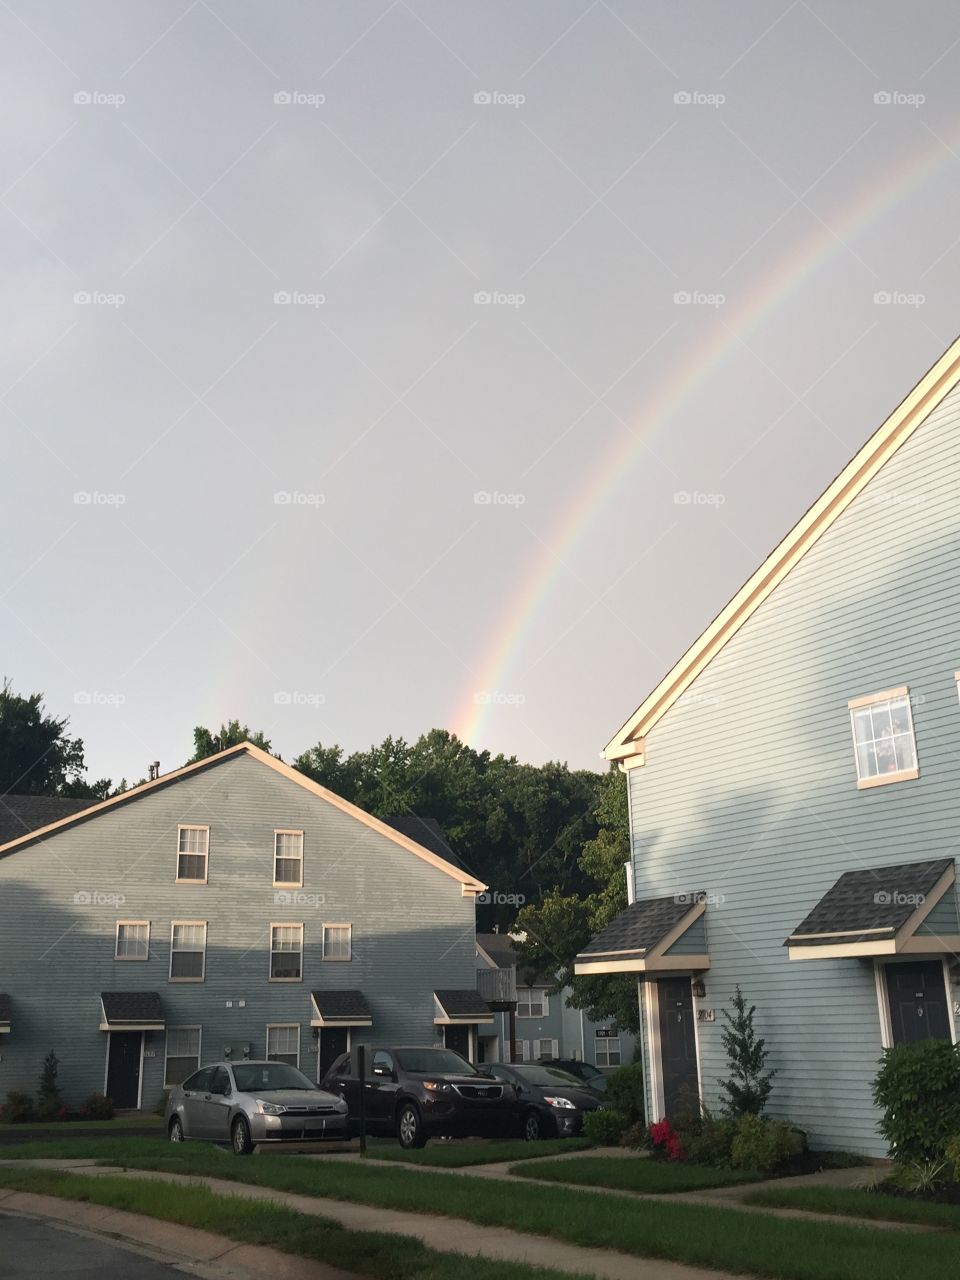 Rainbow over a house